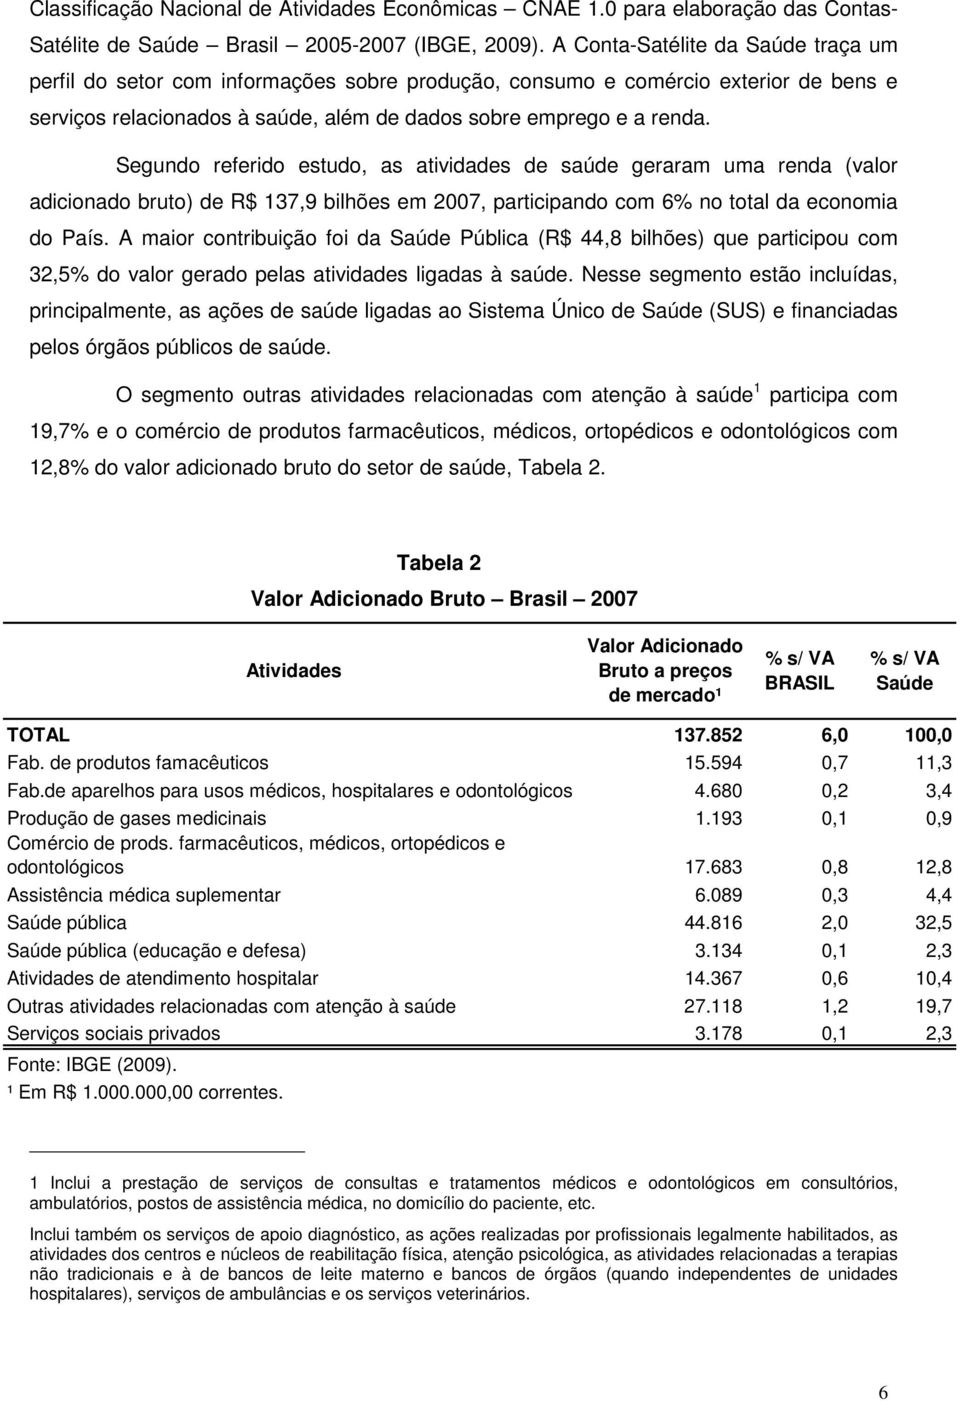 Segundo referido estudo, as atividades de saúde geraram uma renda (valor adicionado bruto) de R$ 137,9 bilhões em 2007, participando com 6% no total da economia do País.